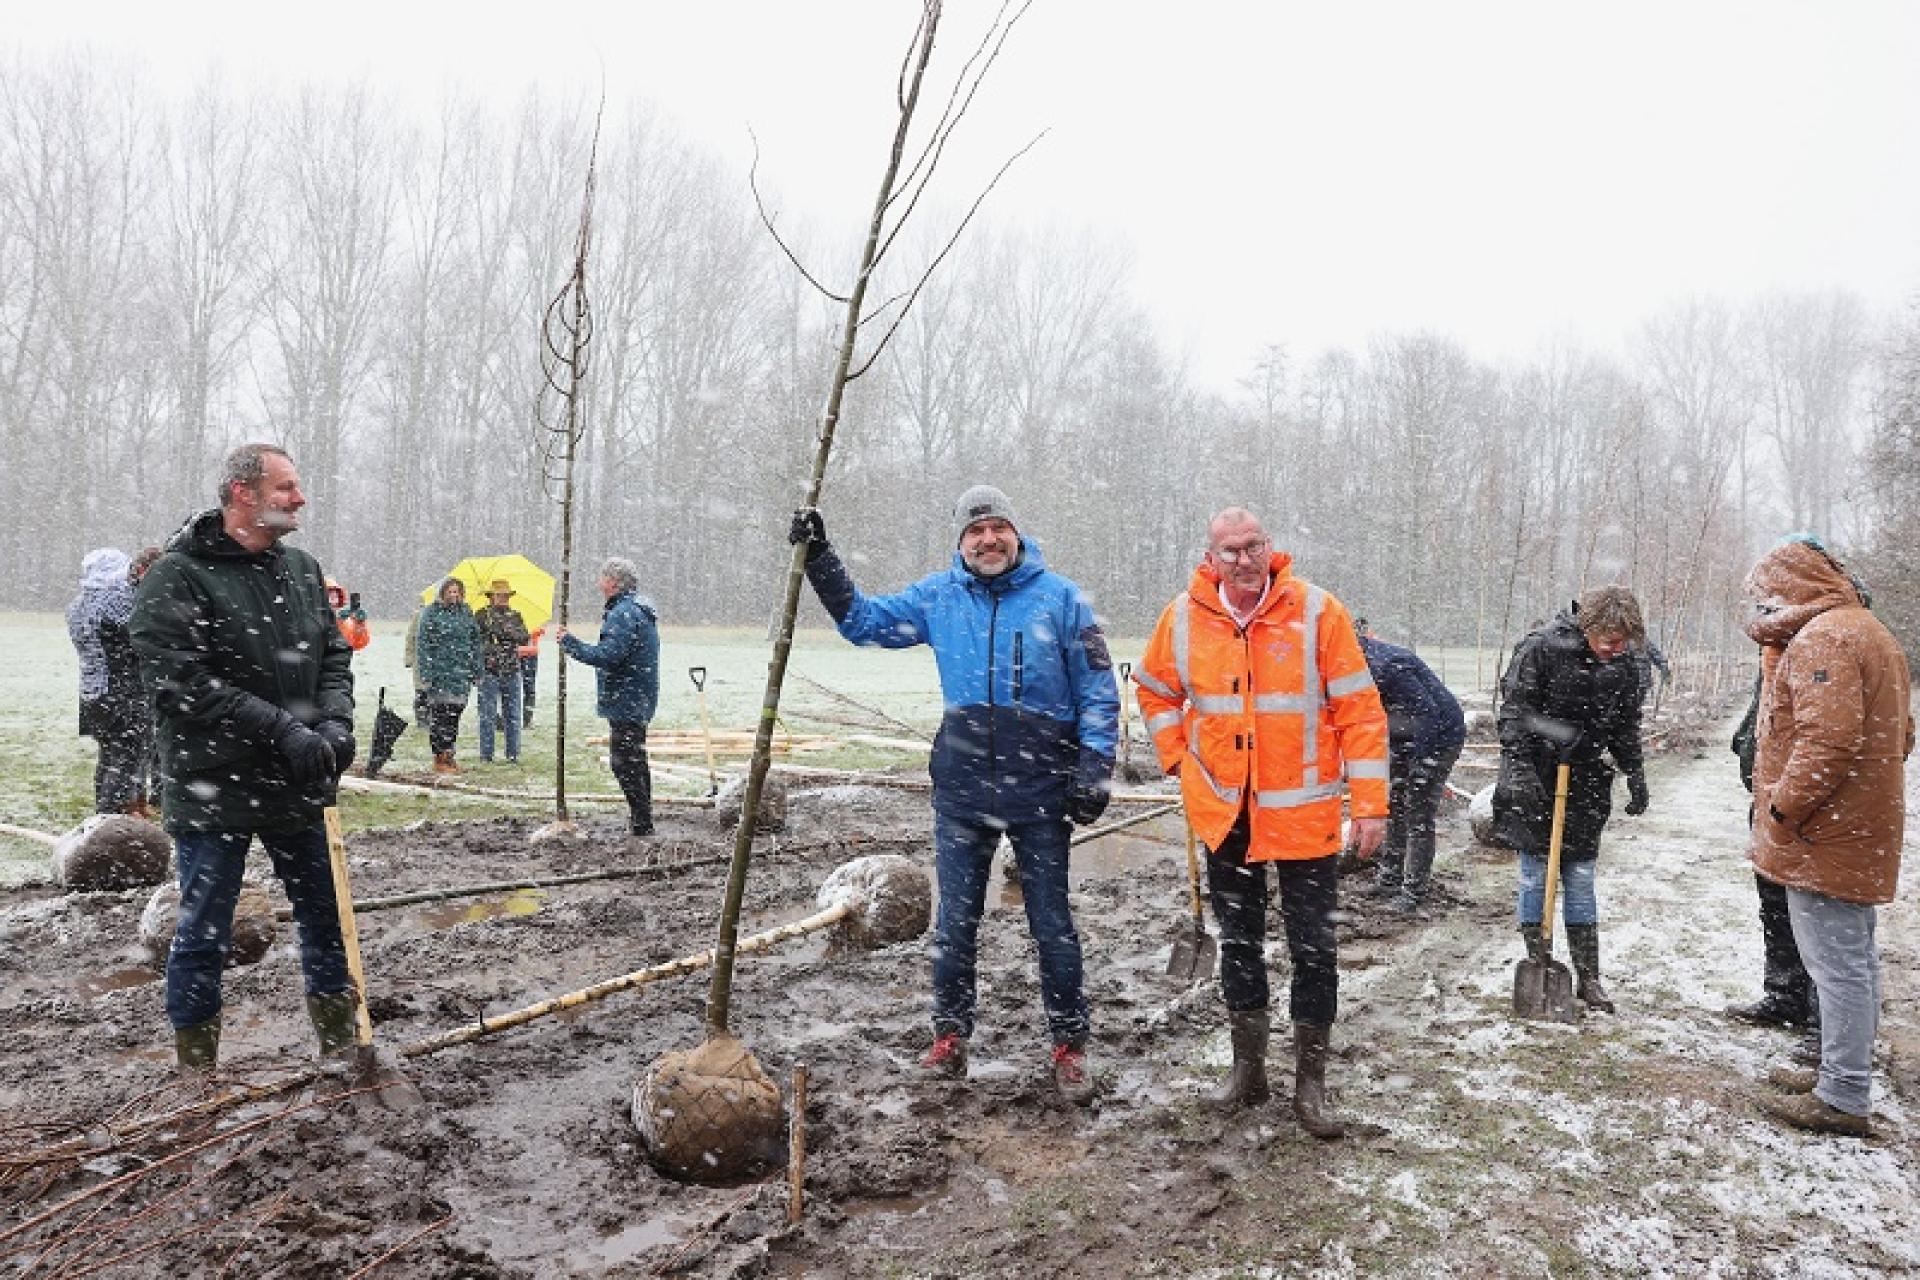 wethouder jeroen verwoort trotseert samen met enkele initiatiefnemers de sneeuw tijdens het planten van een boom